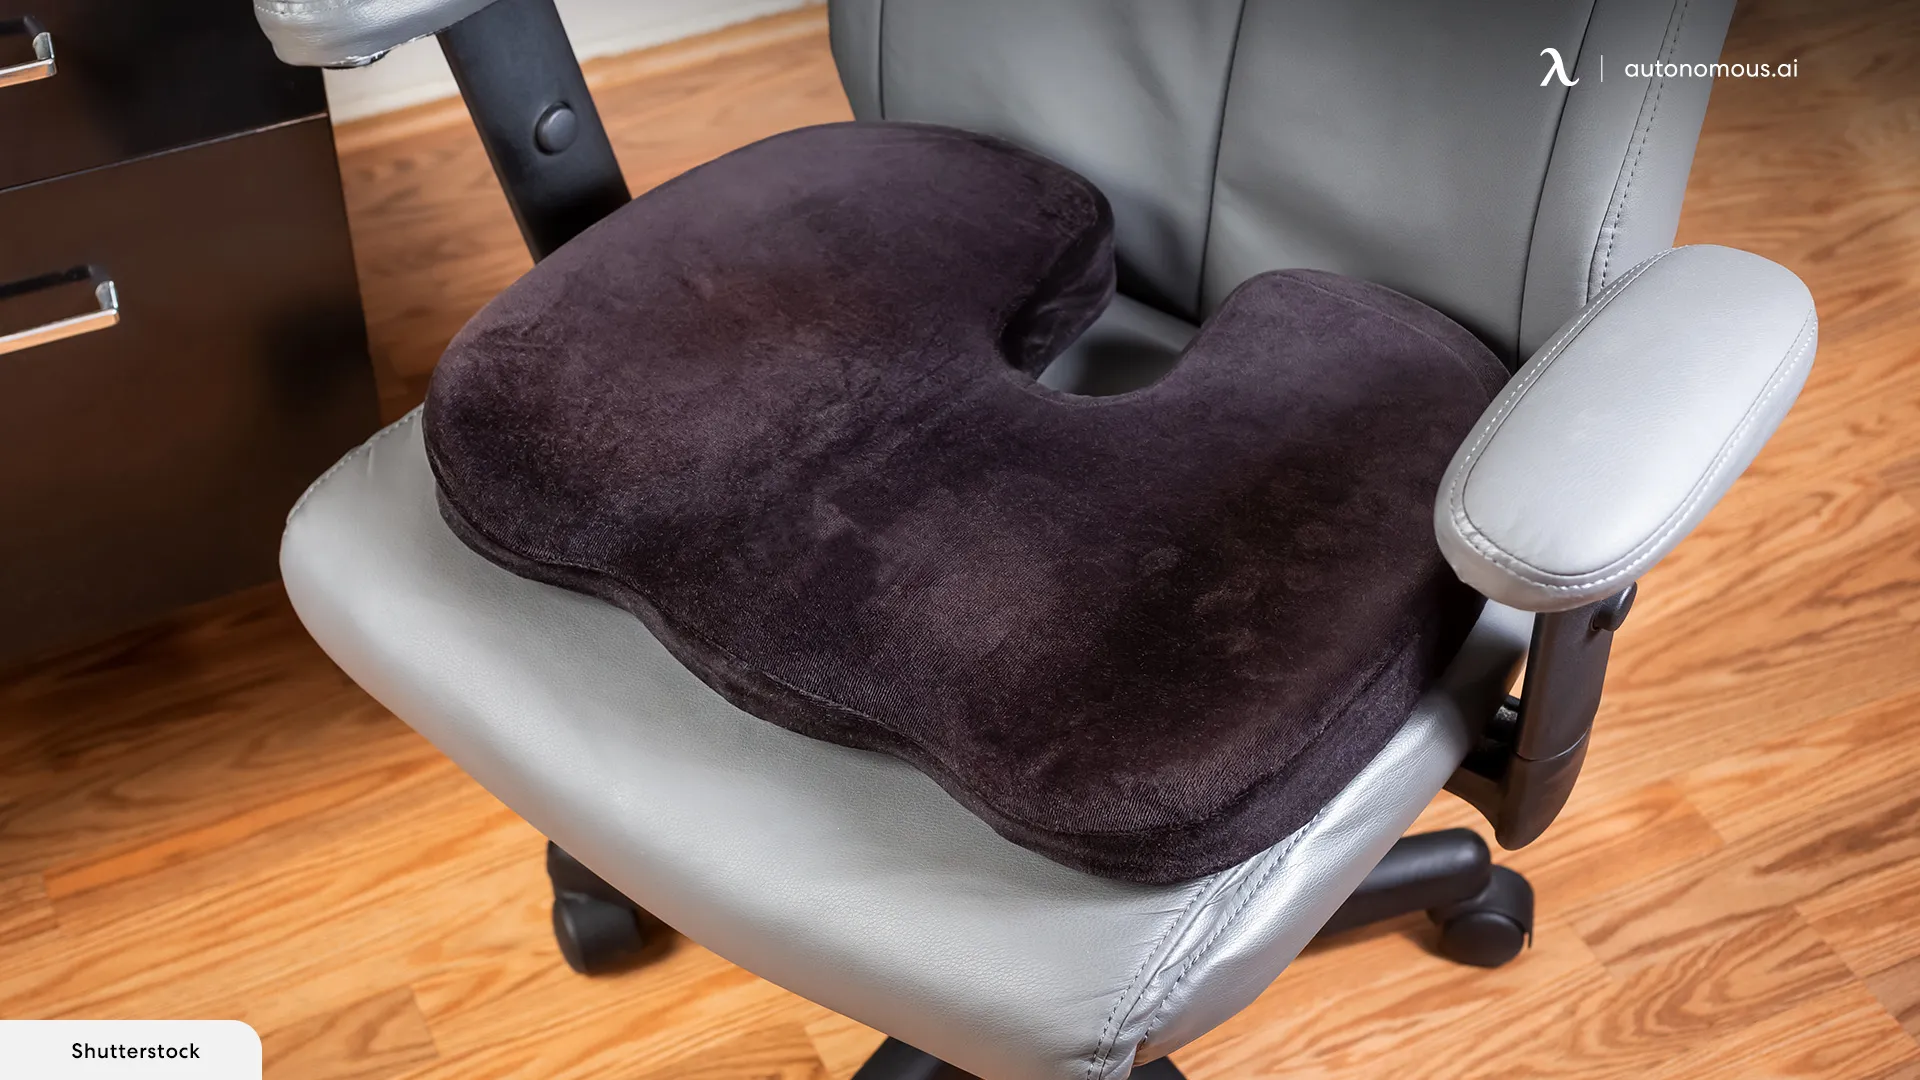 How to Clean an Office Chair Cushion